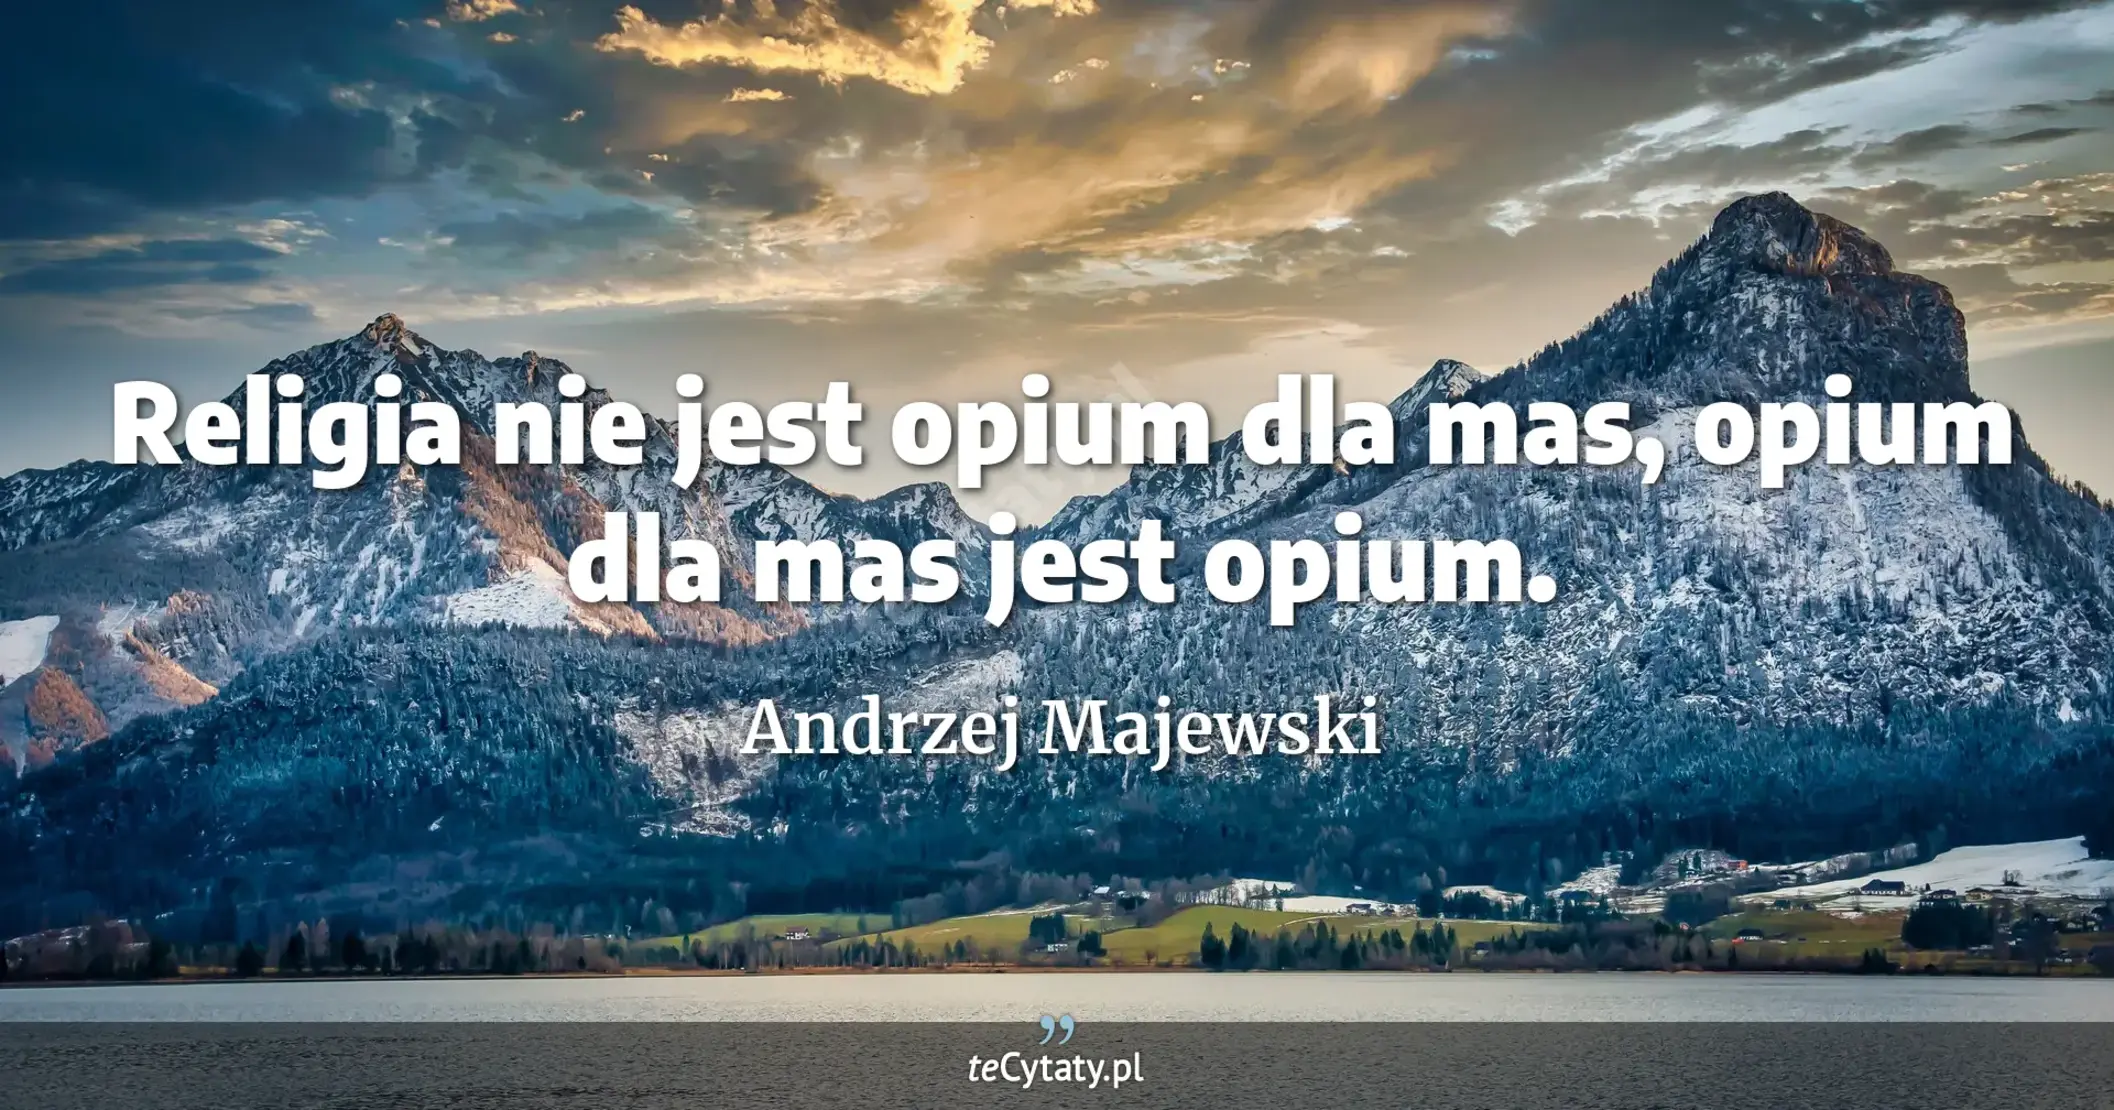 Religia nie jest opium dla mas, opium dla mas jest opium. - Andrzej Majewski